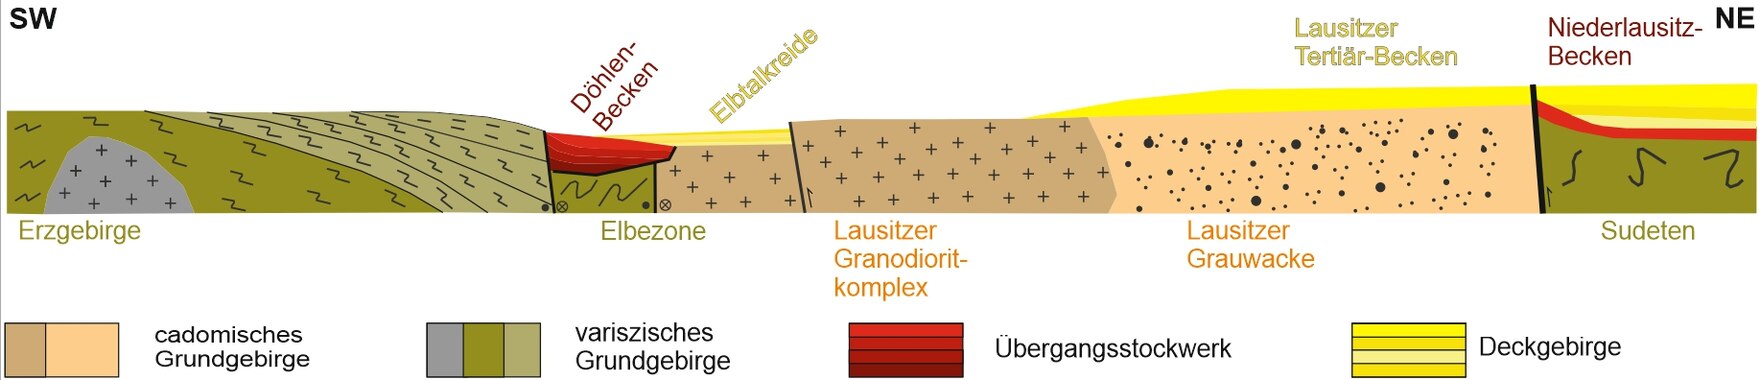 Geologischer Profilschnitt mit dem Stockwerkbau Sachsens